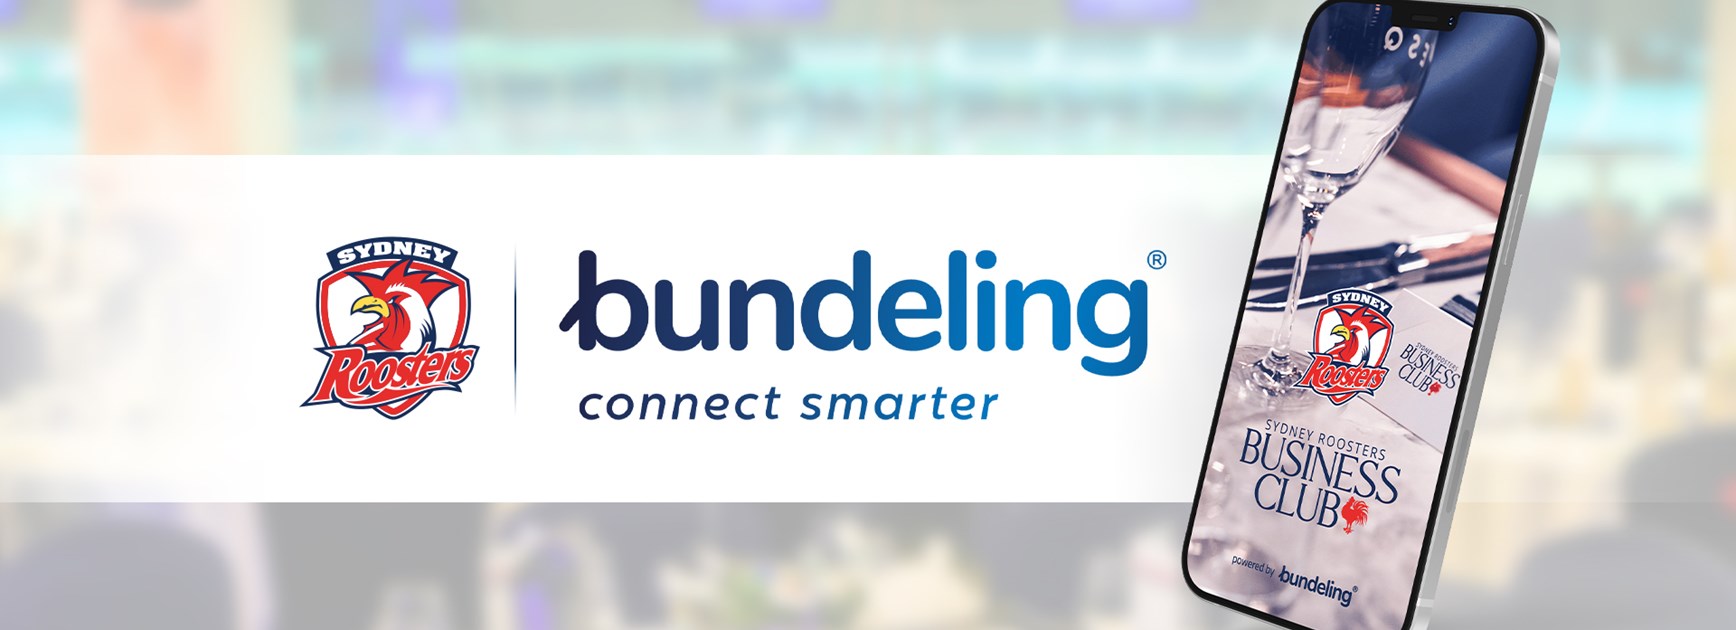 Sydney Roosters Launch Business Club App Alongside Bundeling